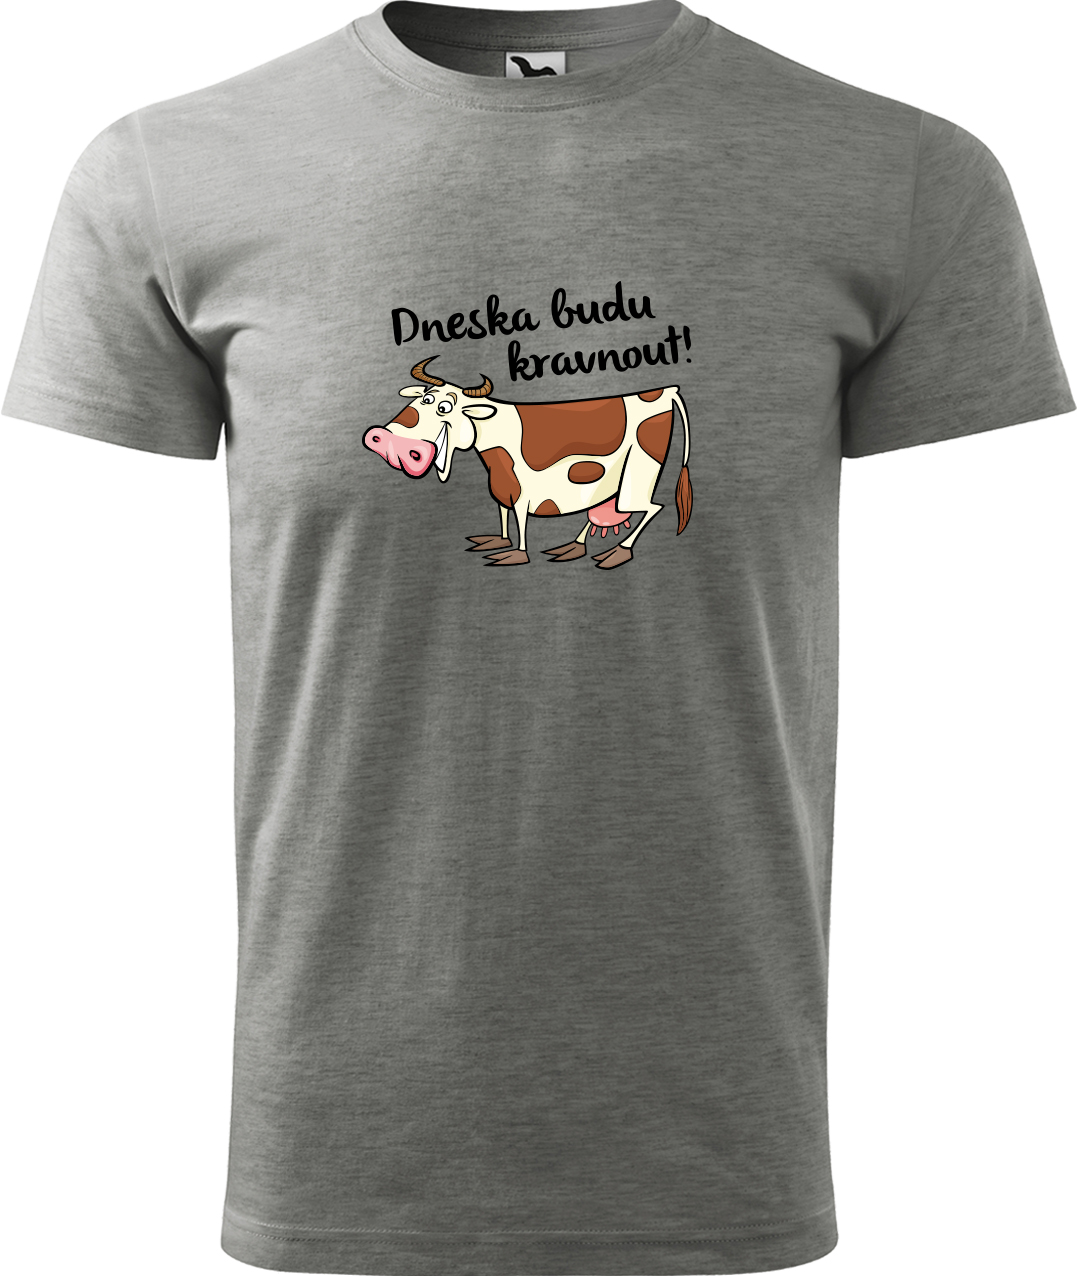 Pánské tričko s krávou - Dneska budu kravnout! Velikost: S, Barva: Tmavě šedý melír (12), Střih: pánský